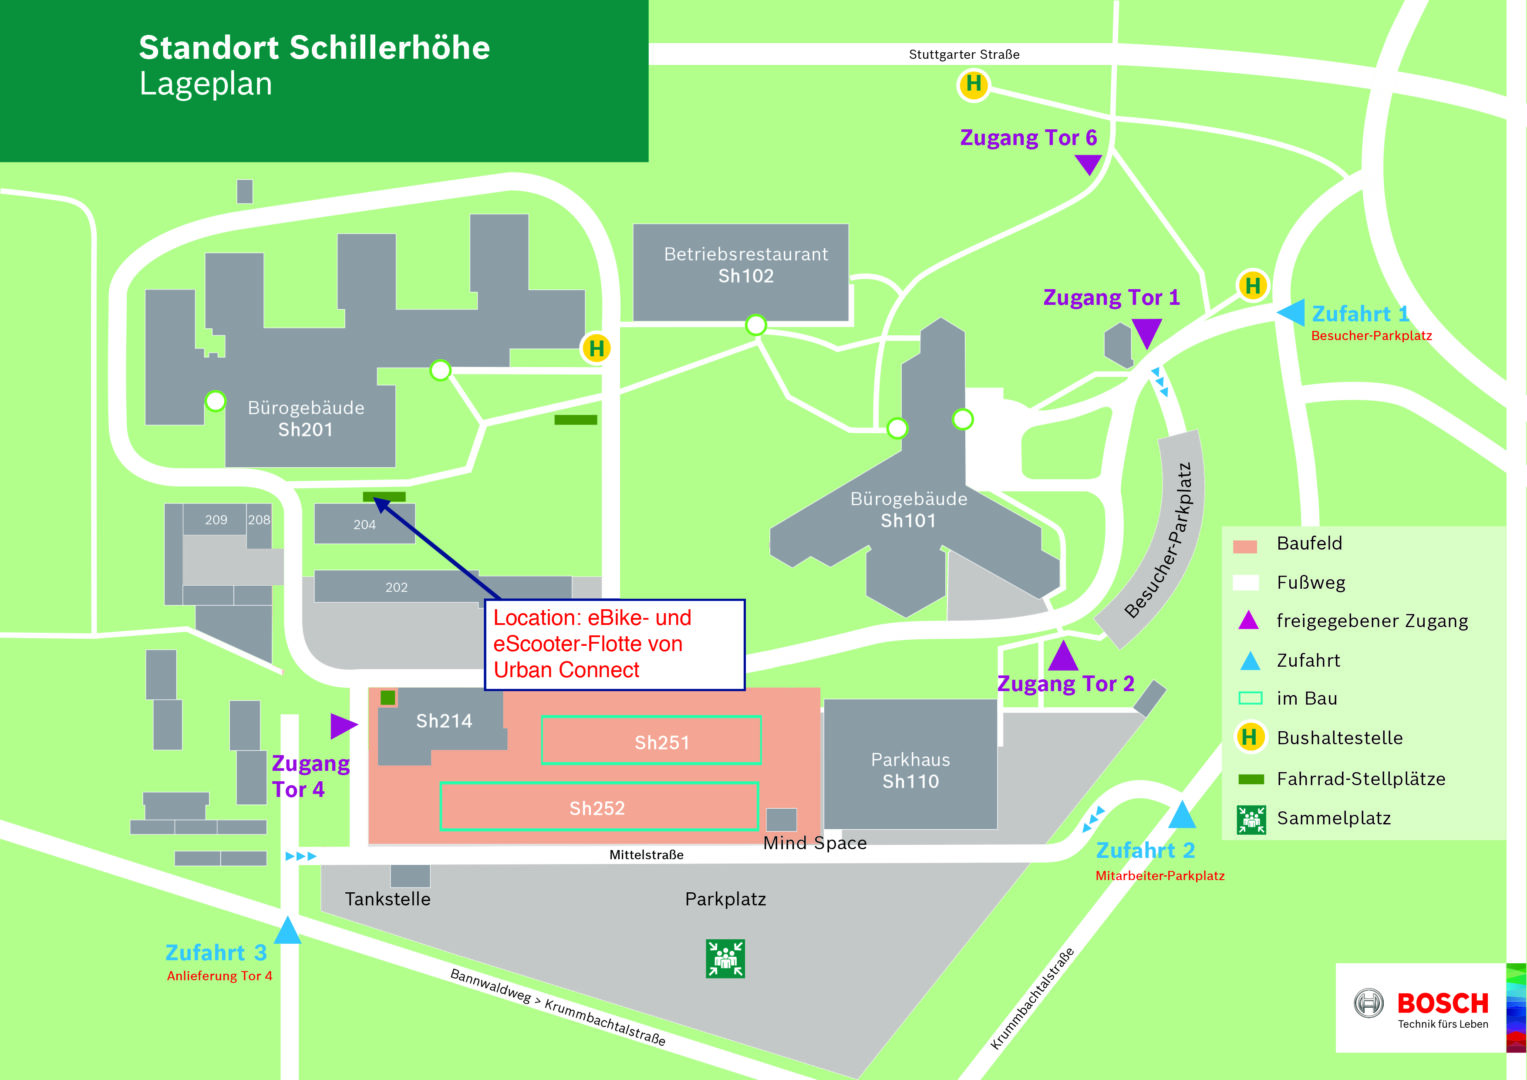 Standort Schillerhöhe Lageplan